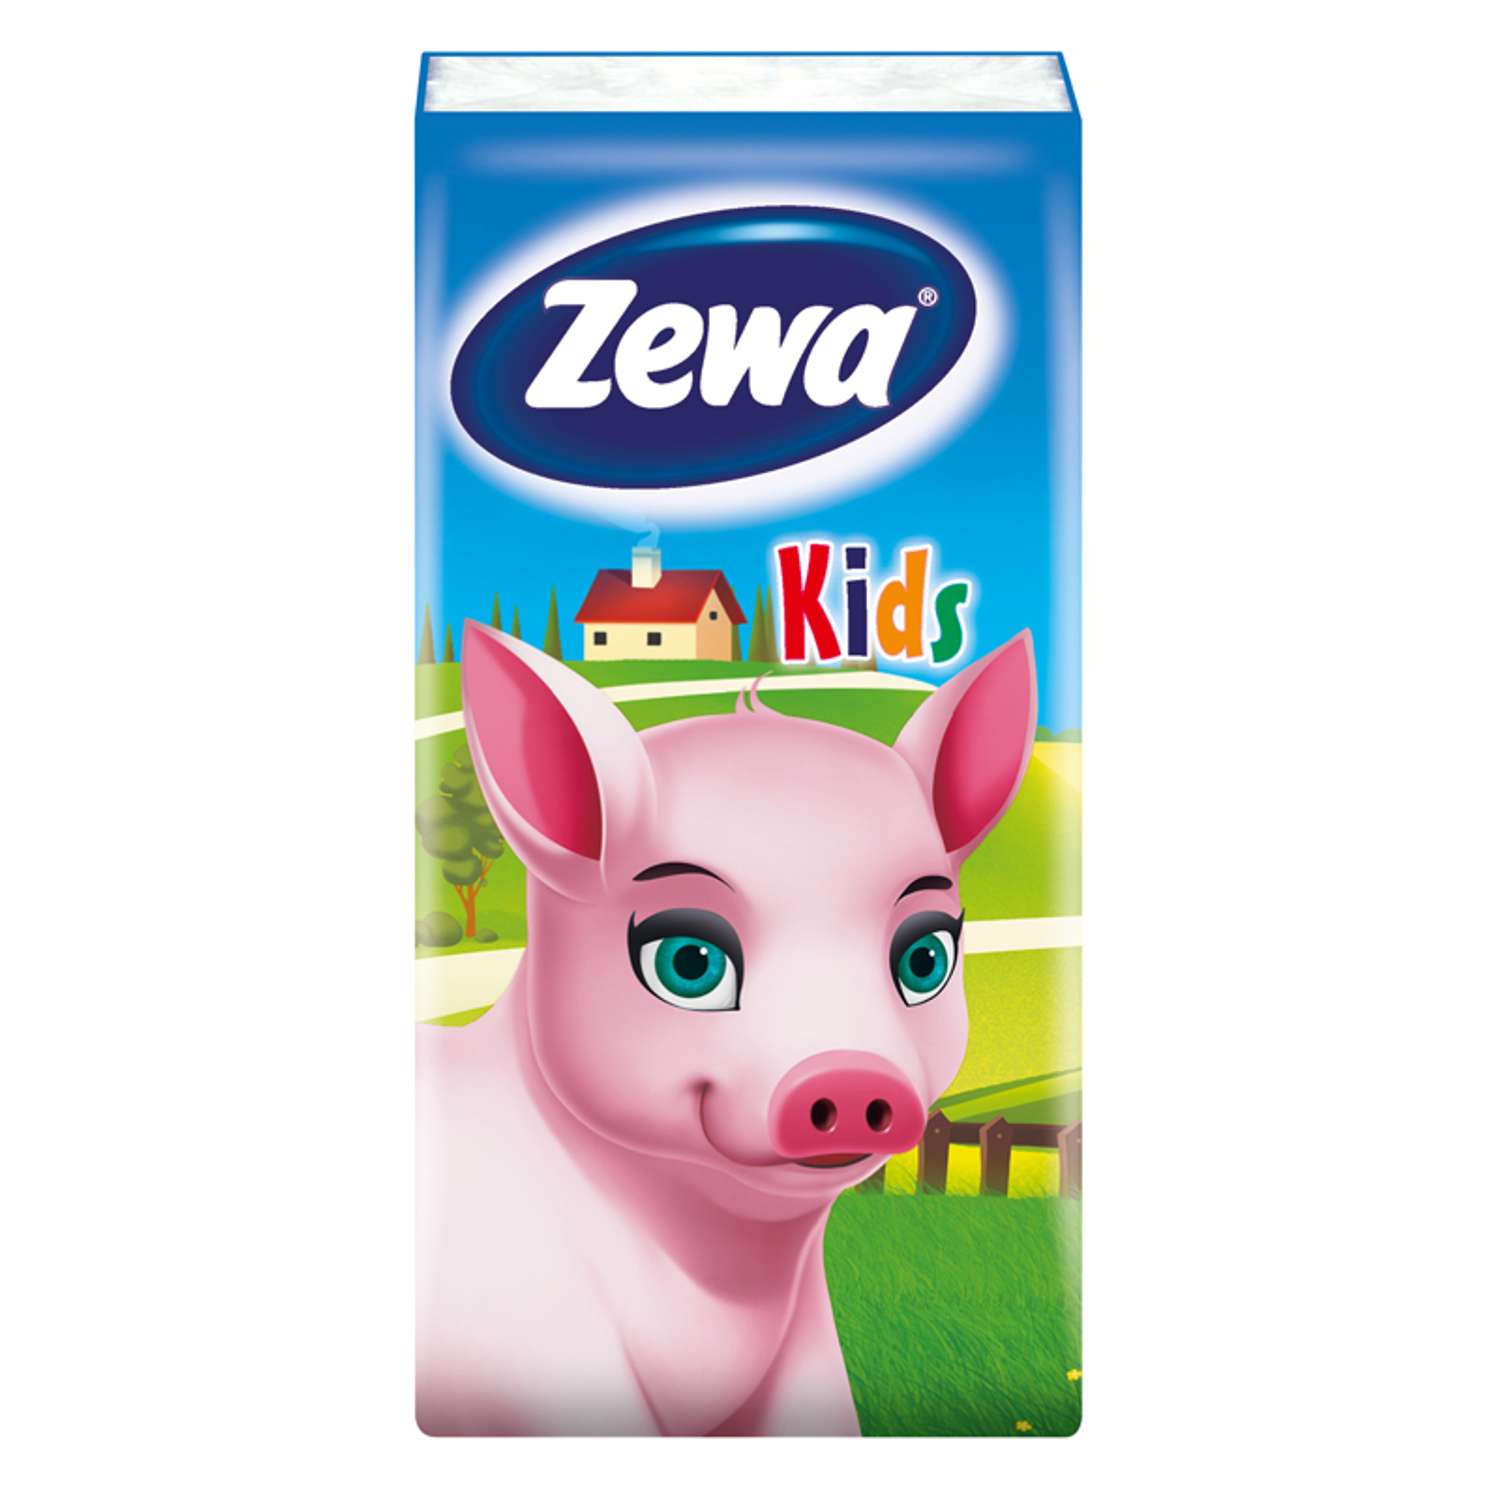 Платки носовые Zewa Kids 3 слоя 10шт в ассортименте 51122 - фото 4